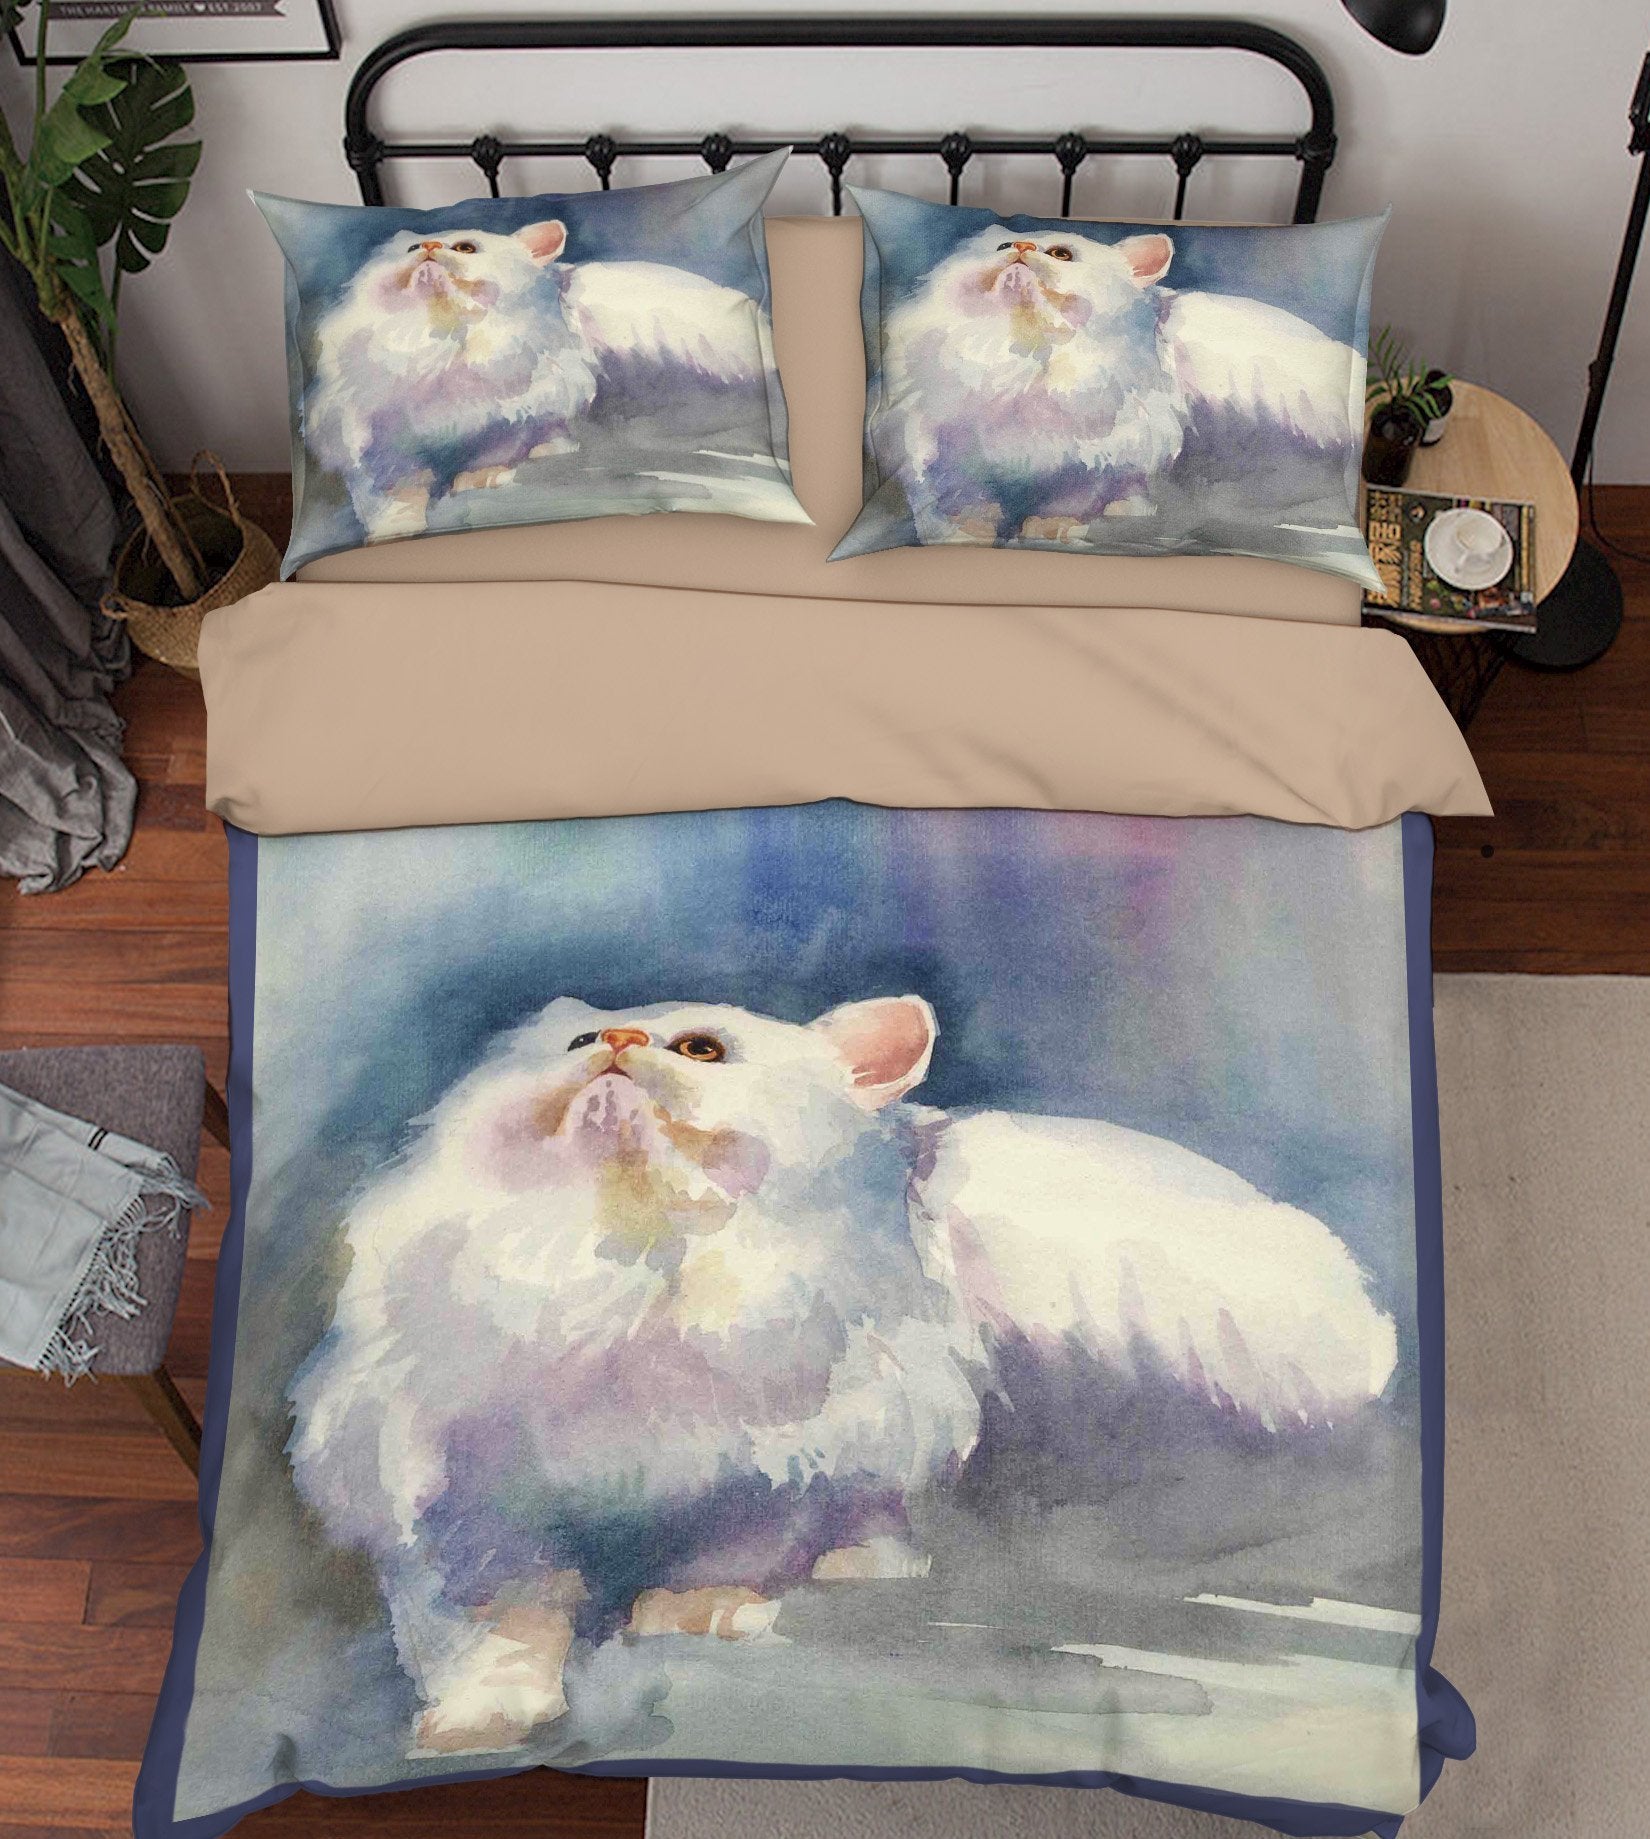 3D Chasing Butterflies 146 Bed Pillowcases Quilt Wallpaper AJ Wallpaper 